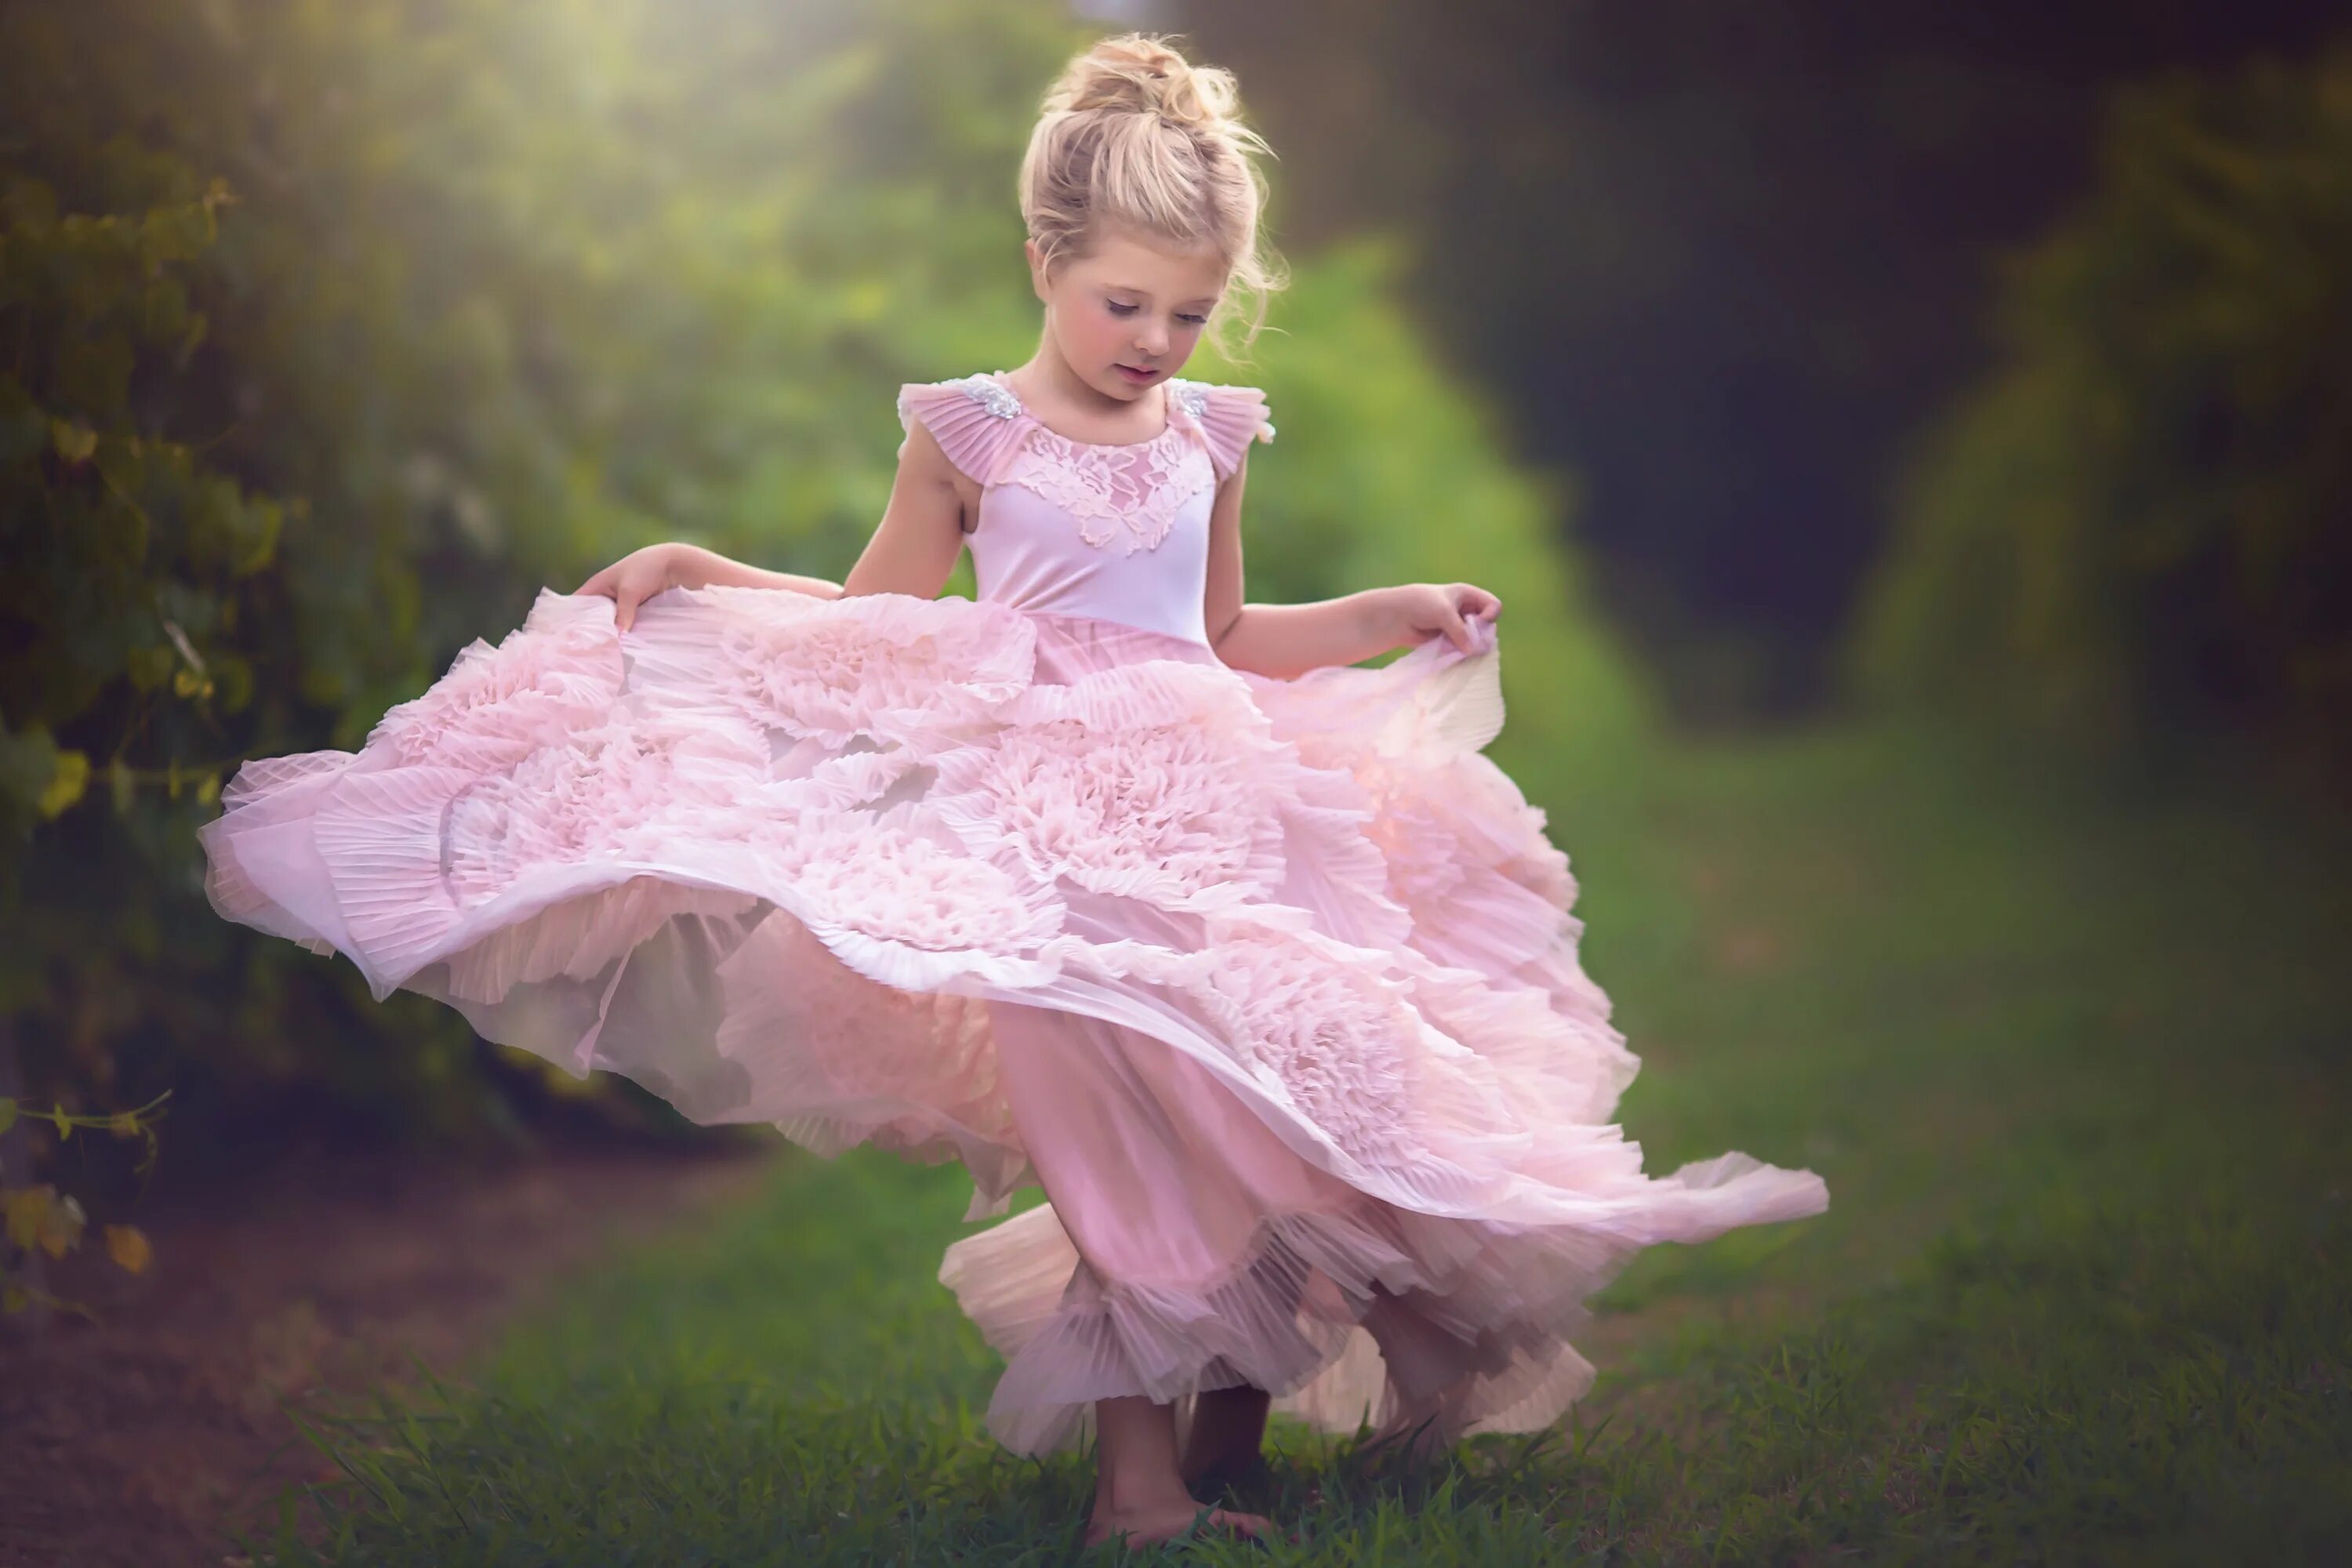 I like little girls. Красивые платья для девочек. Шикарные детские платья. Красивое платье для маленькой девочки. Пышное платье для девочки.